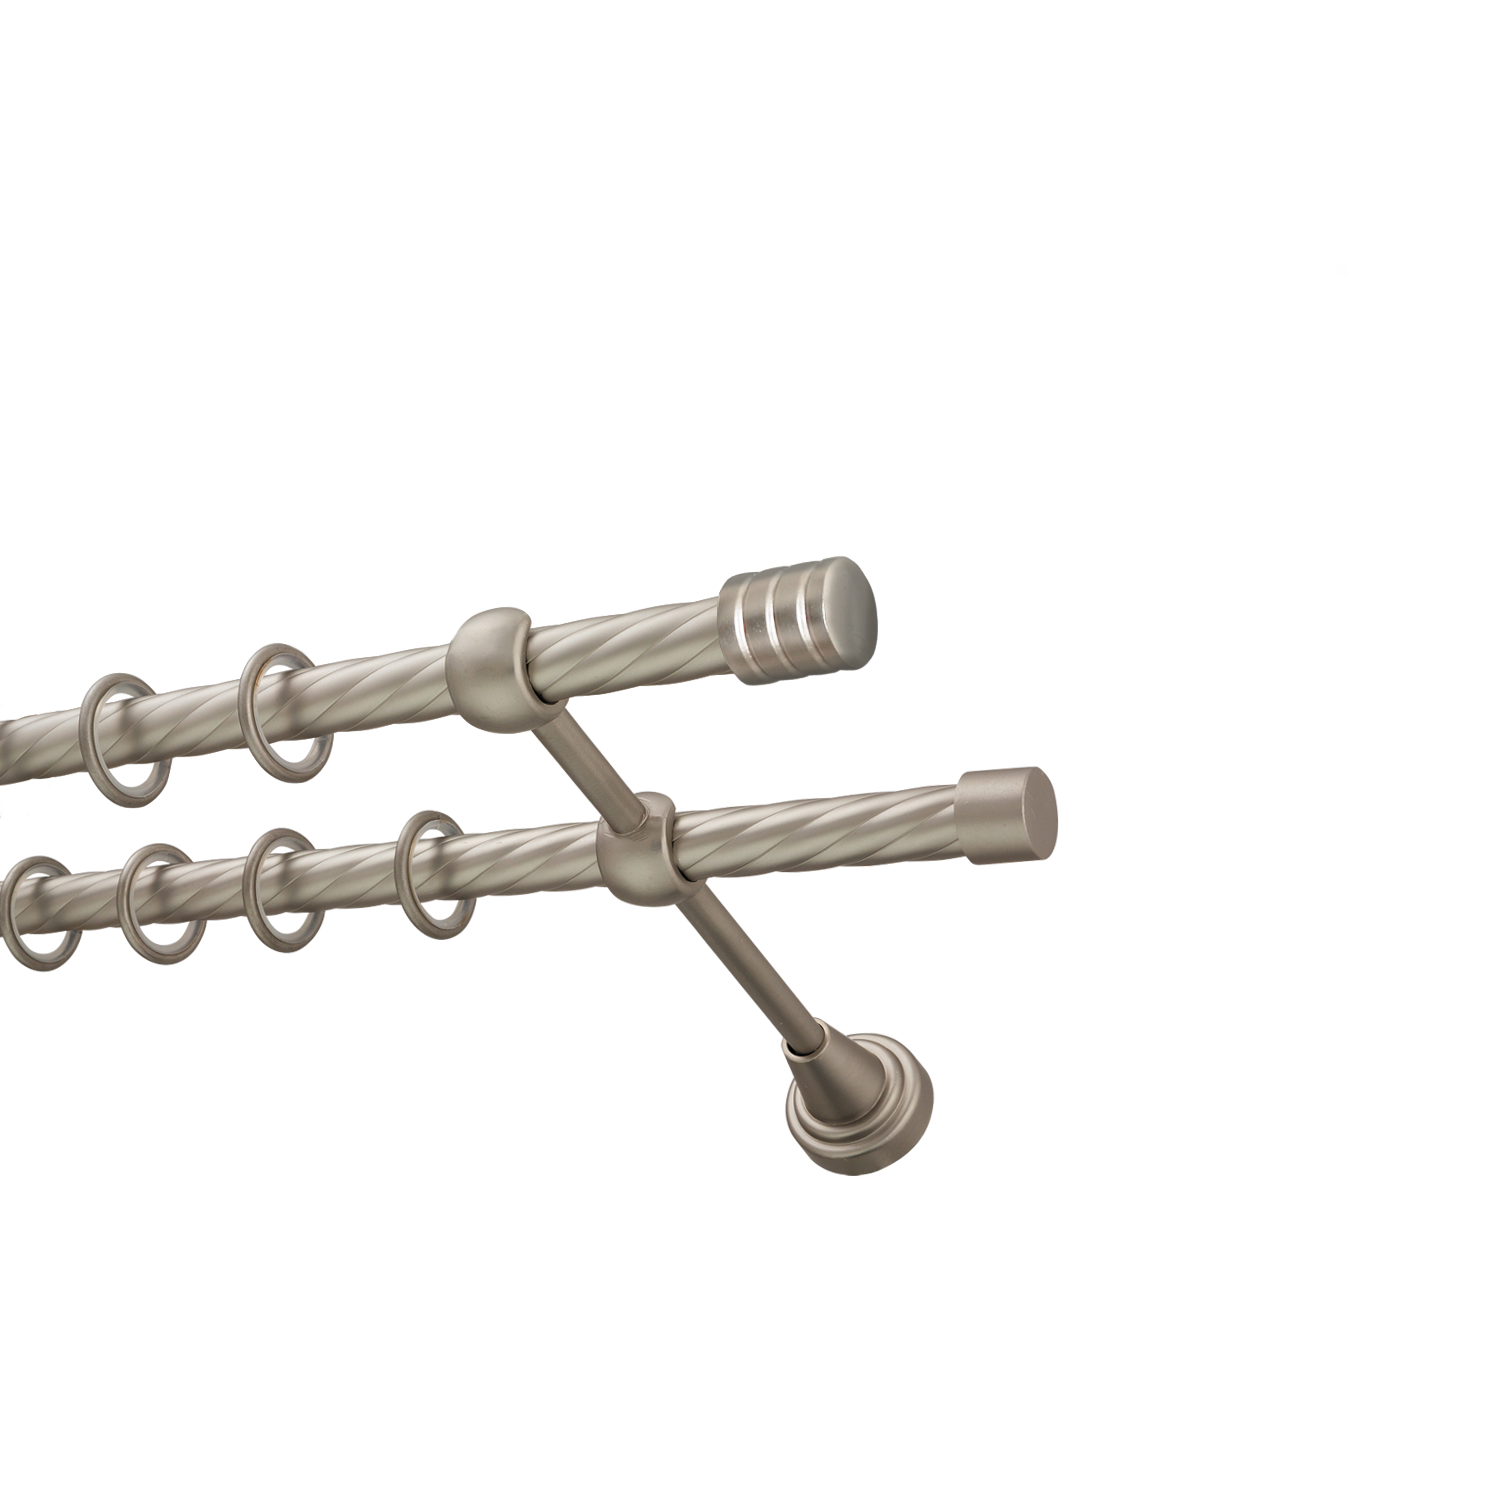 Металлический карниз для штор Подиум, двухрядный 16/16 мм, сталь, витая штанга, длина 240 см - фото Wikidecor.ru